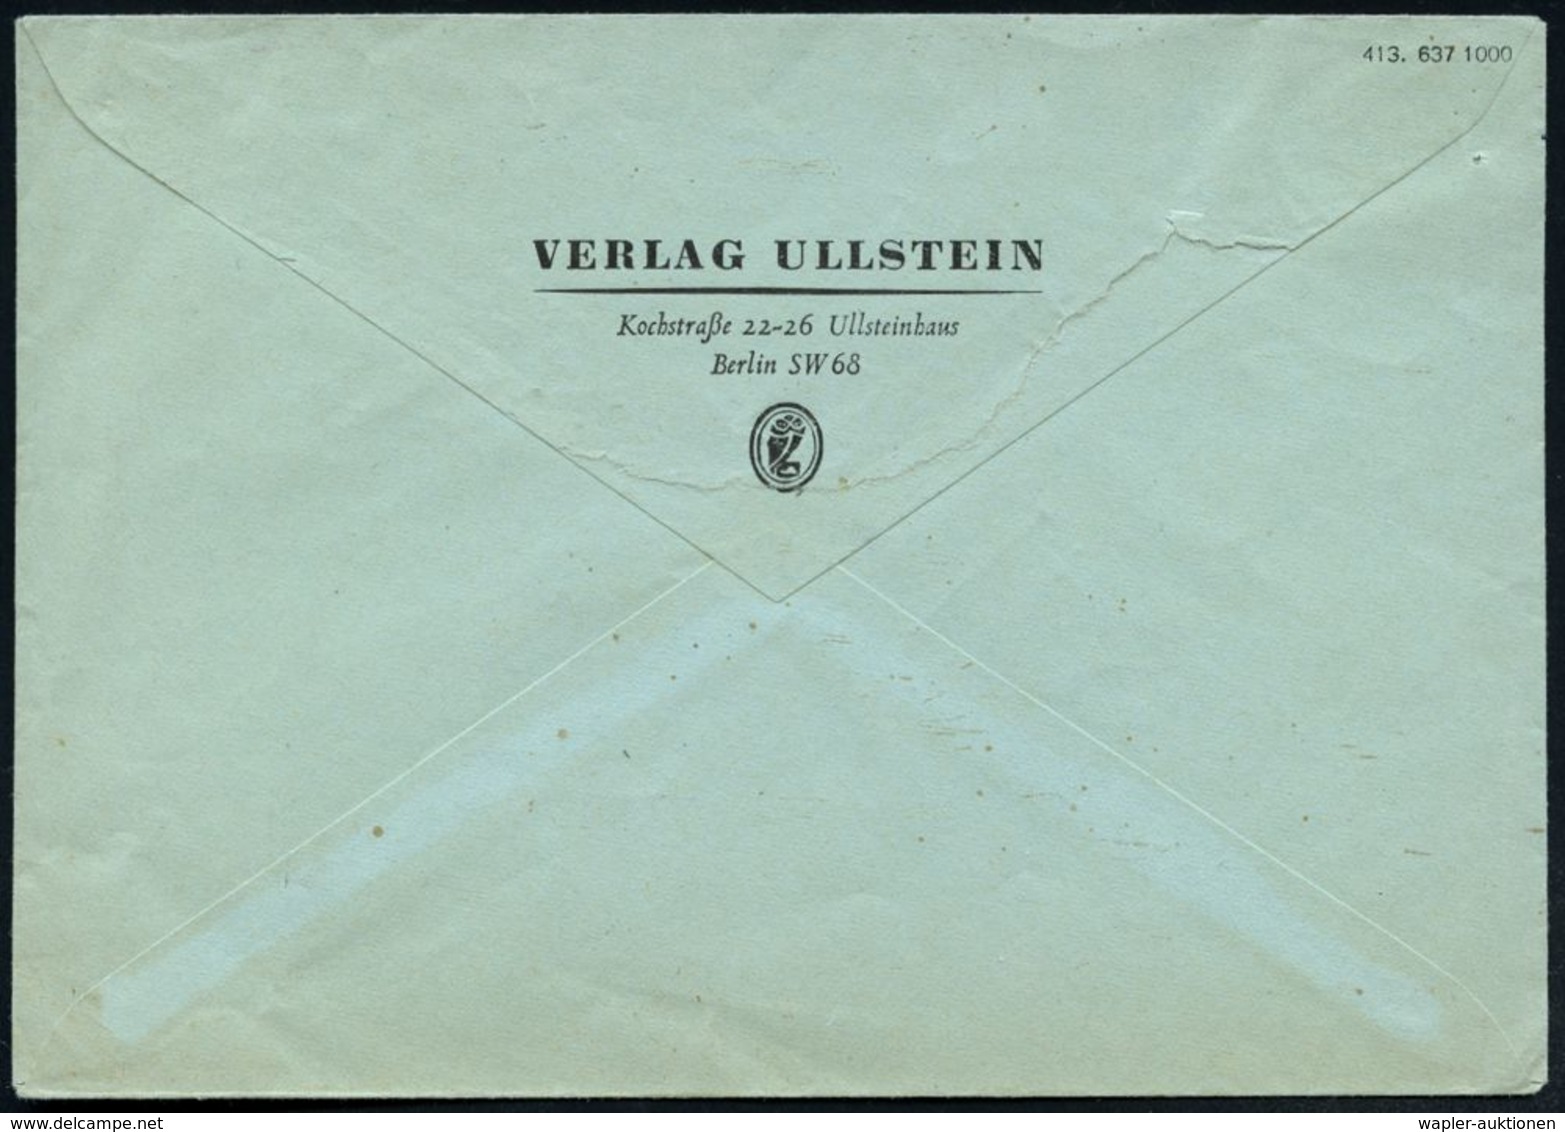 BERLIN SW/ 68/ U/ KOCHSTRASSE/ 22-25 1937 (25.10.) AFS = "U"(llstein) + Eule = Altes Firmen-Logo! ,"arisiert" = 1934 Zwa - Judaika, Judentum